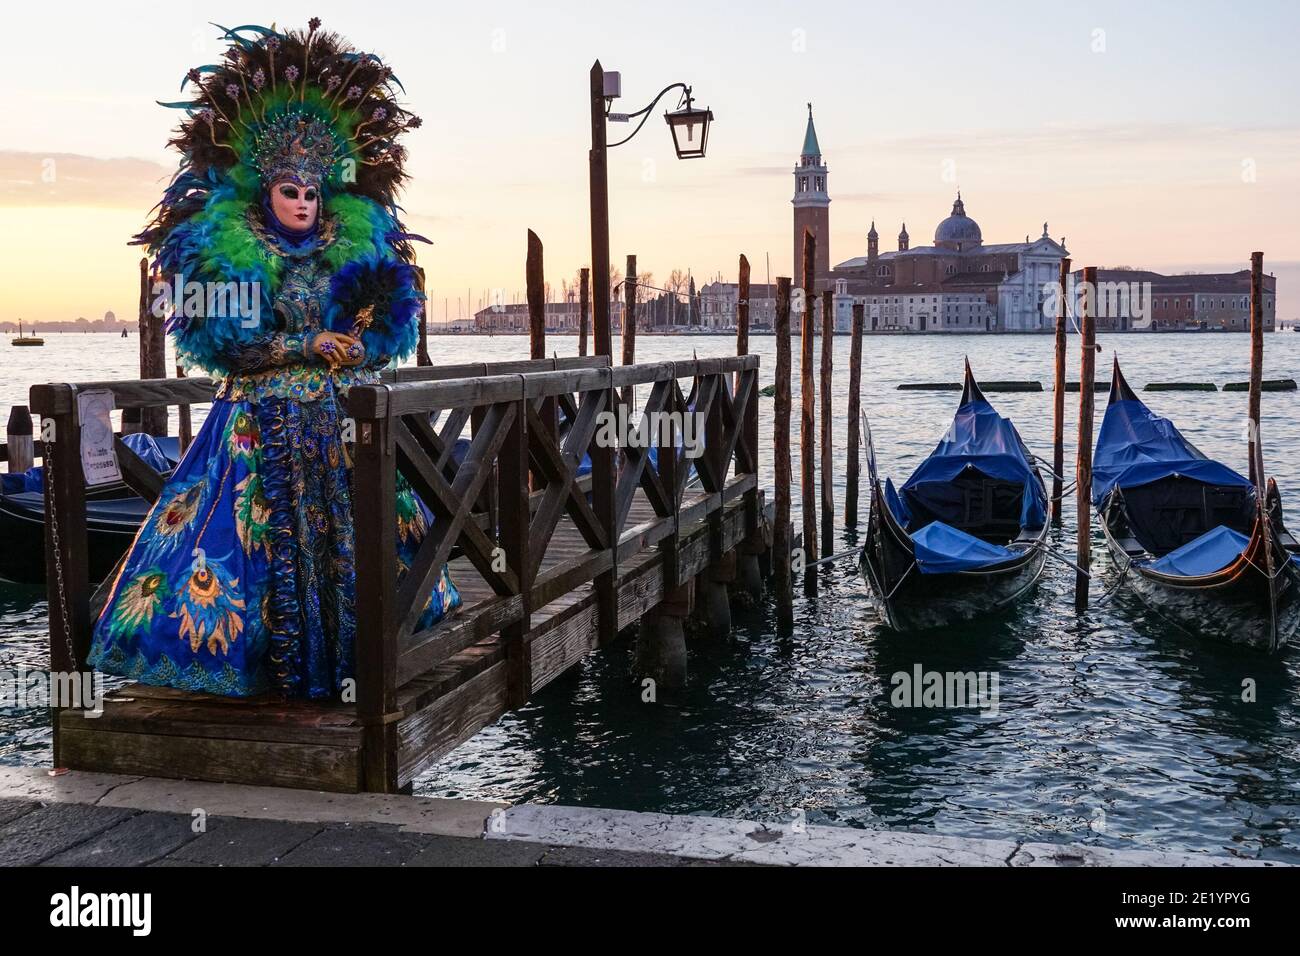 Donna vestita in costume tradizionale decorato e maschera dipinta durante il Carnevale di Venezia con alle spalle il Monastero di San Giorgio, Venezia, Italia Foto Stock